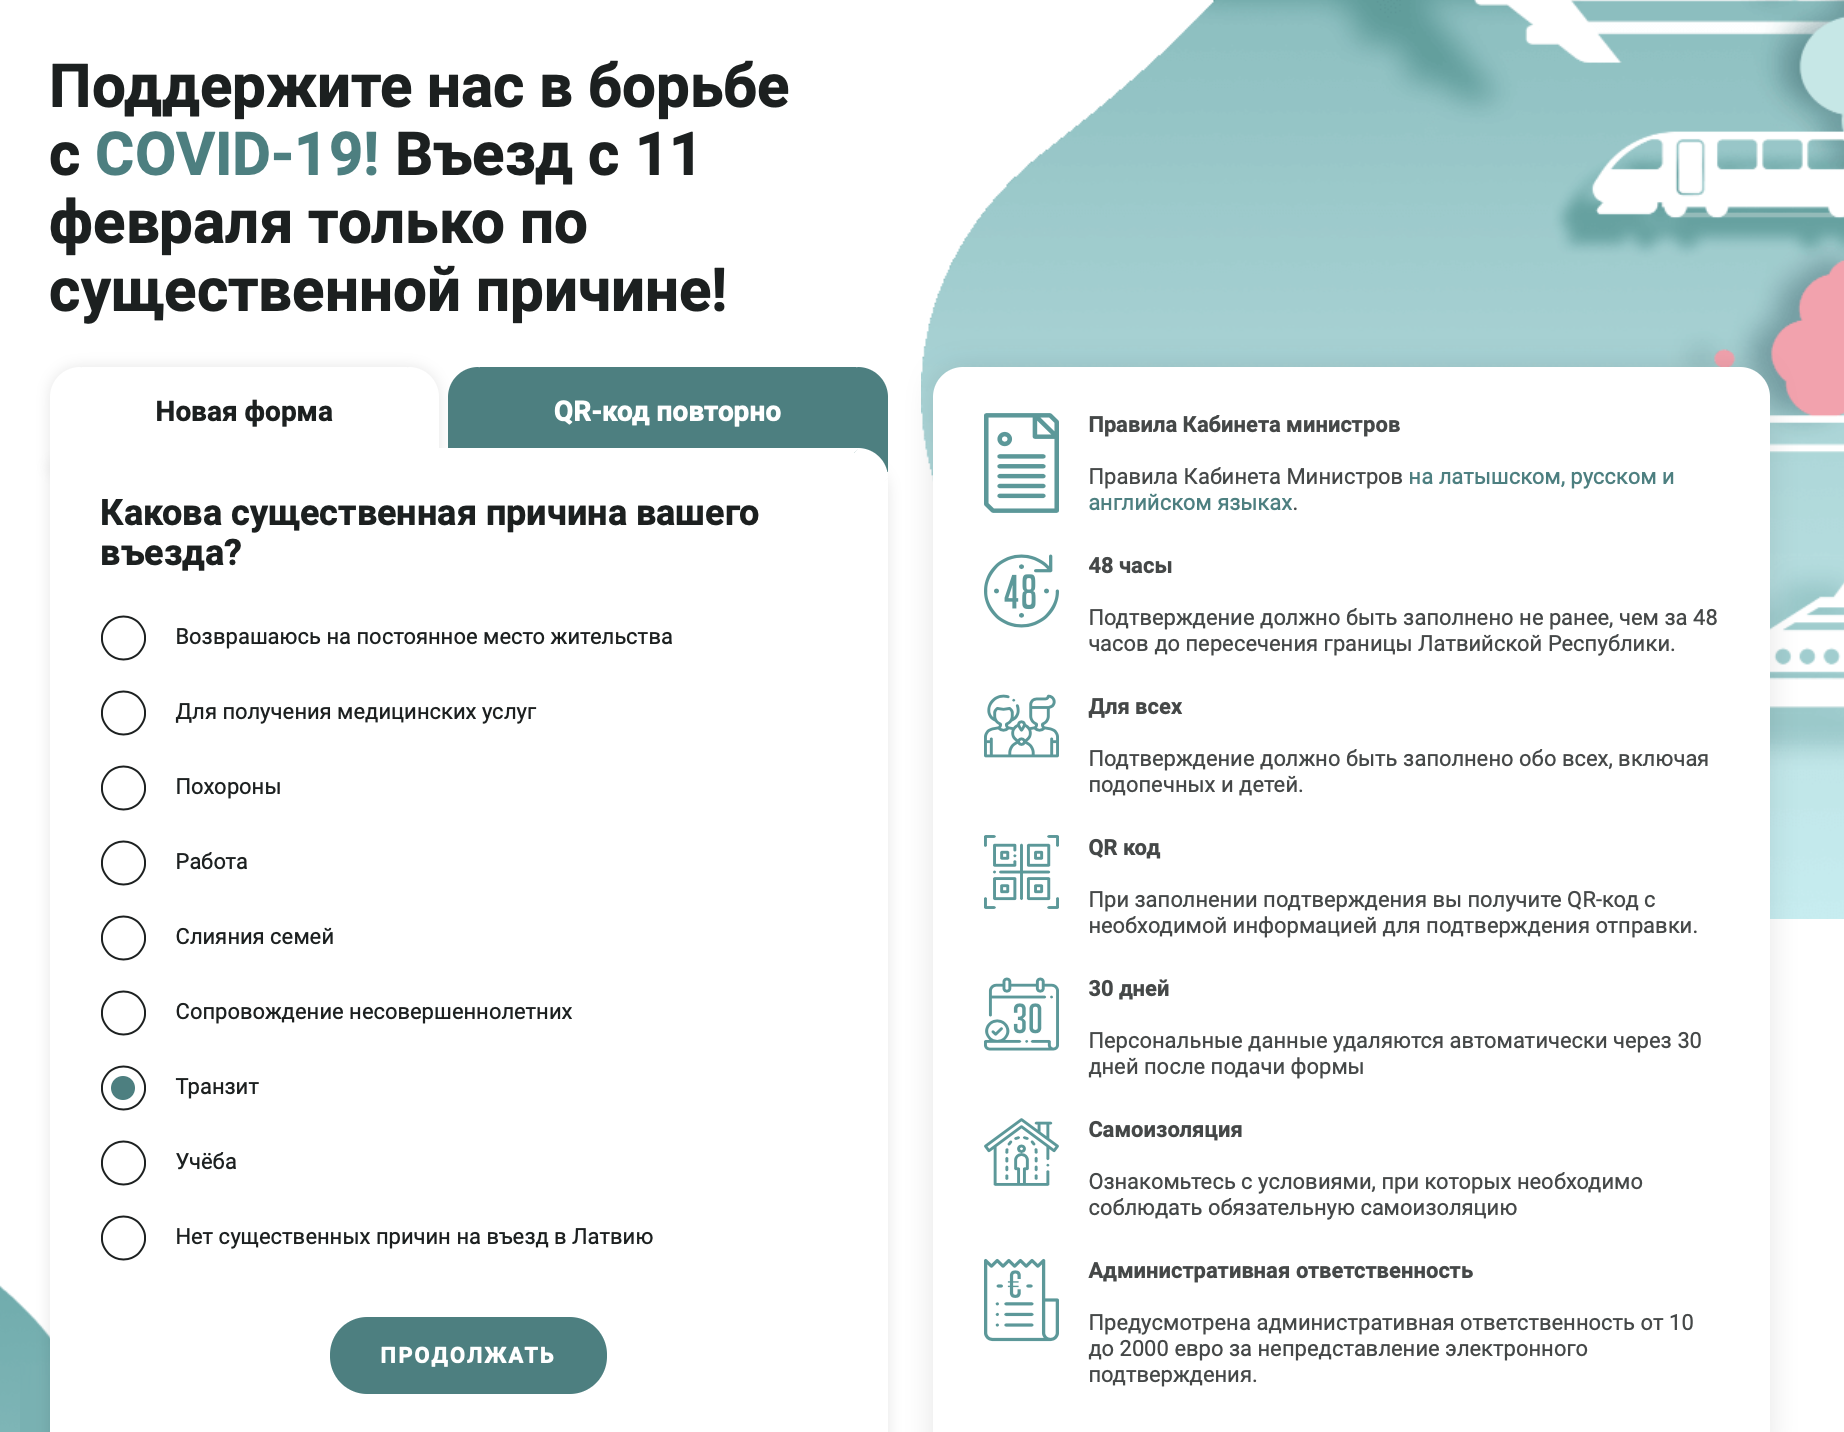 Заполнить анкету для транзита через Ригу можно на русском языке. Транзит — уважительная причина для въезда в Латвию